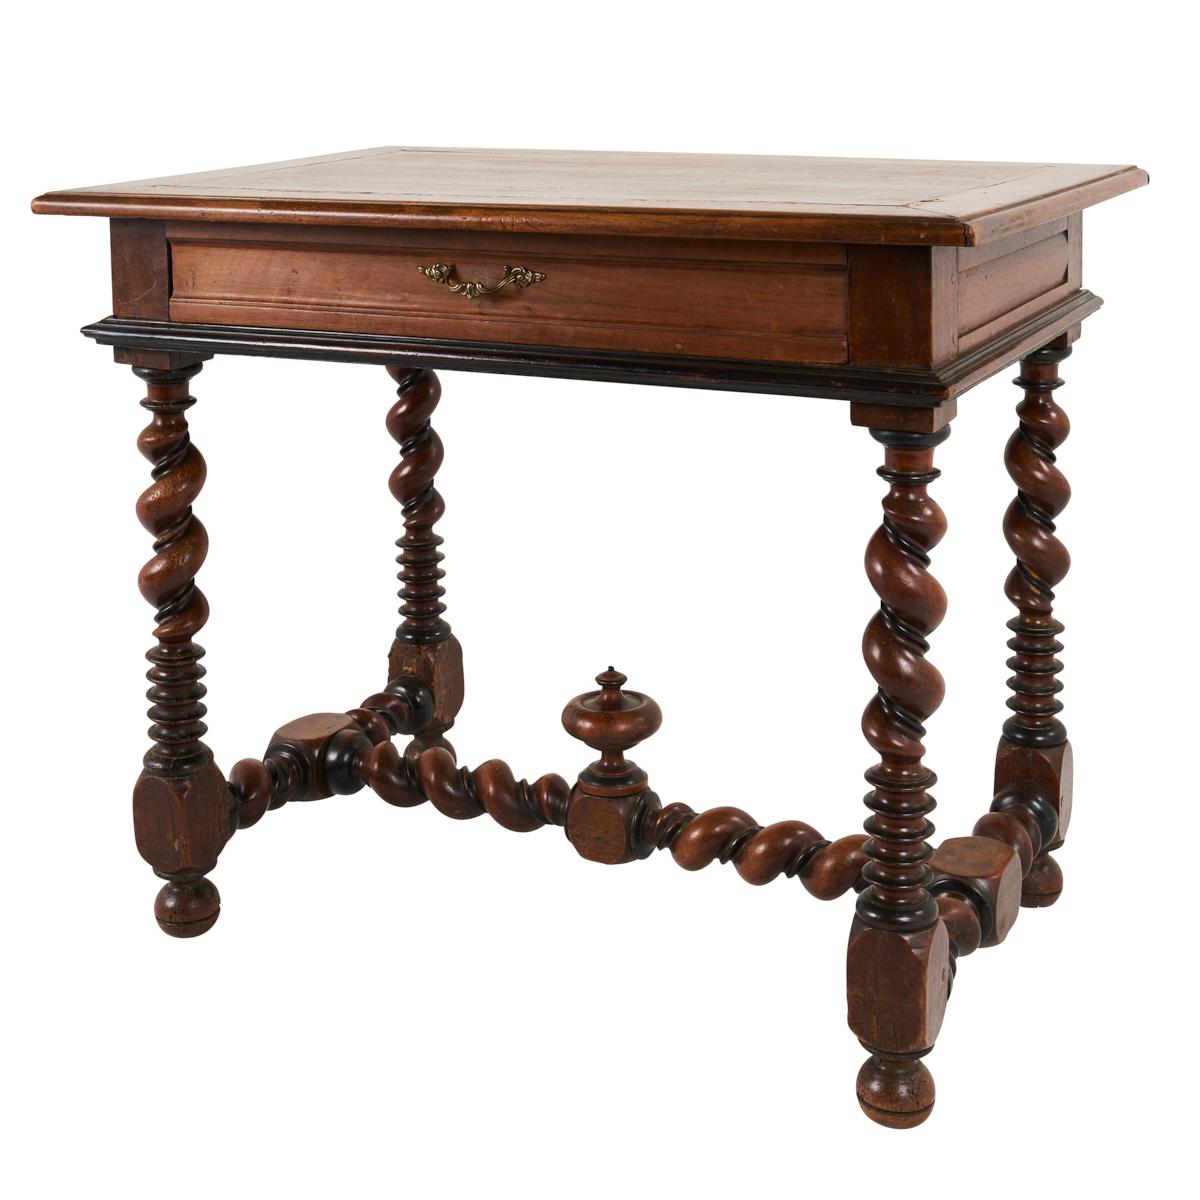 Cette table d'appoint portugaise du XVIIIe siècle est une pièce élégante et polyvalente, dotée de magnifiques pieds tournés en spirale et d'un seul tiroir. Fabriqué en noyer, il a une chaleur, une présence et des utilisations infinies.
 